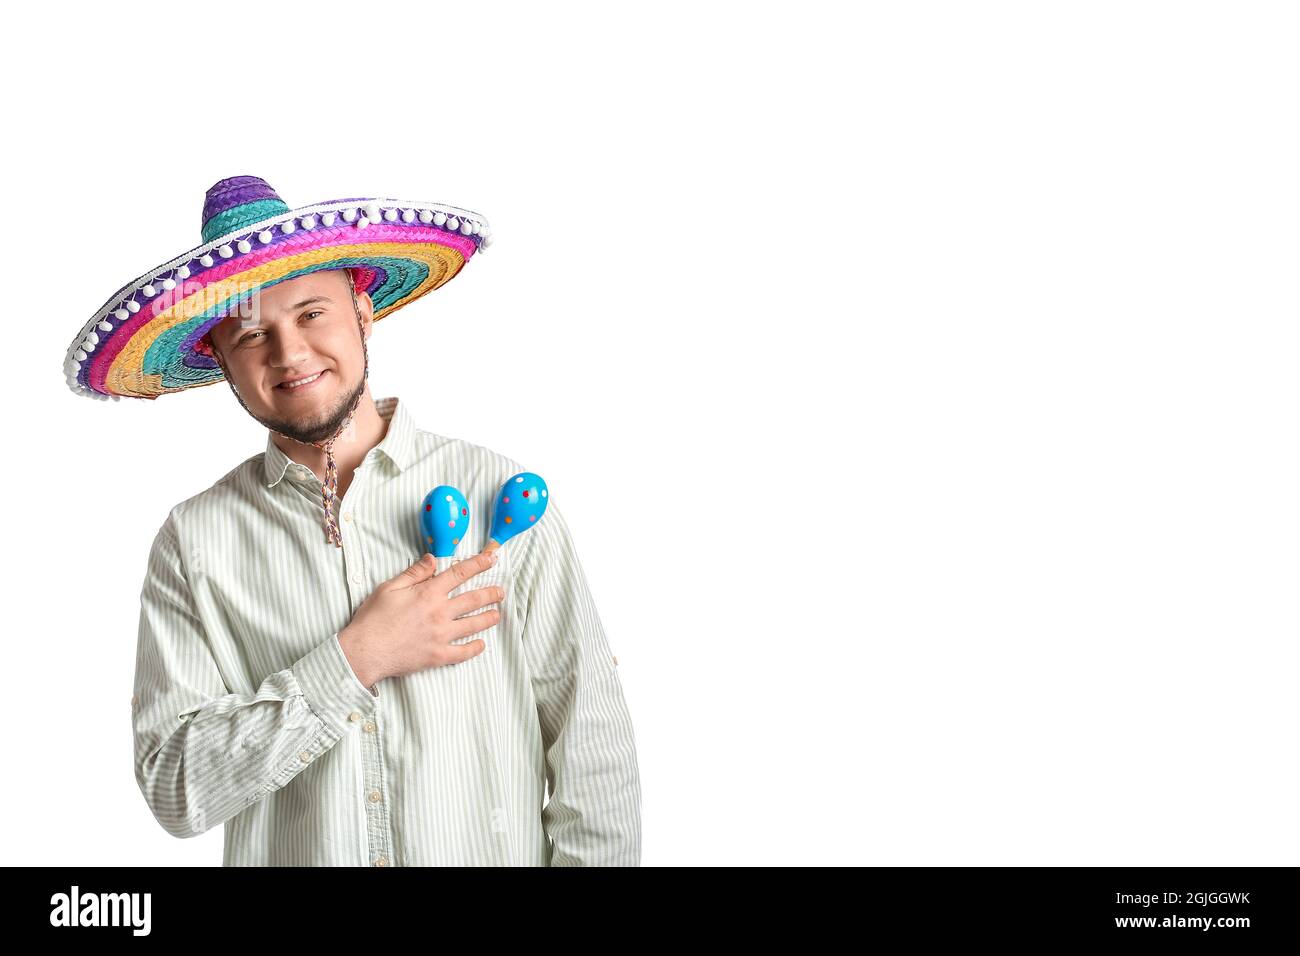 Junger Mexikaner mit Sombrero-Hut und Maracas auf weißem Hintergrund  Stockfotografie - Alamy